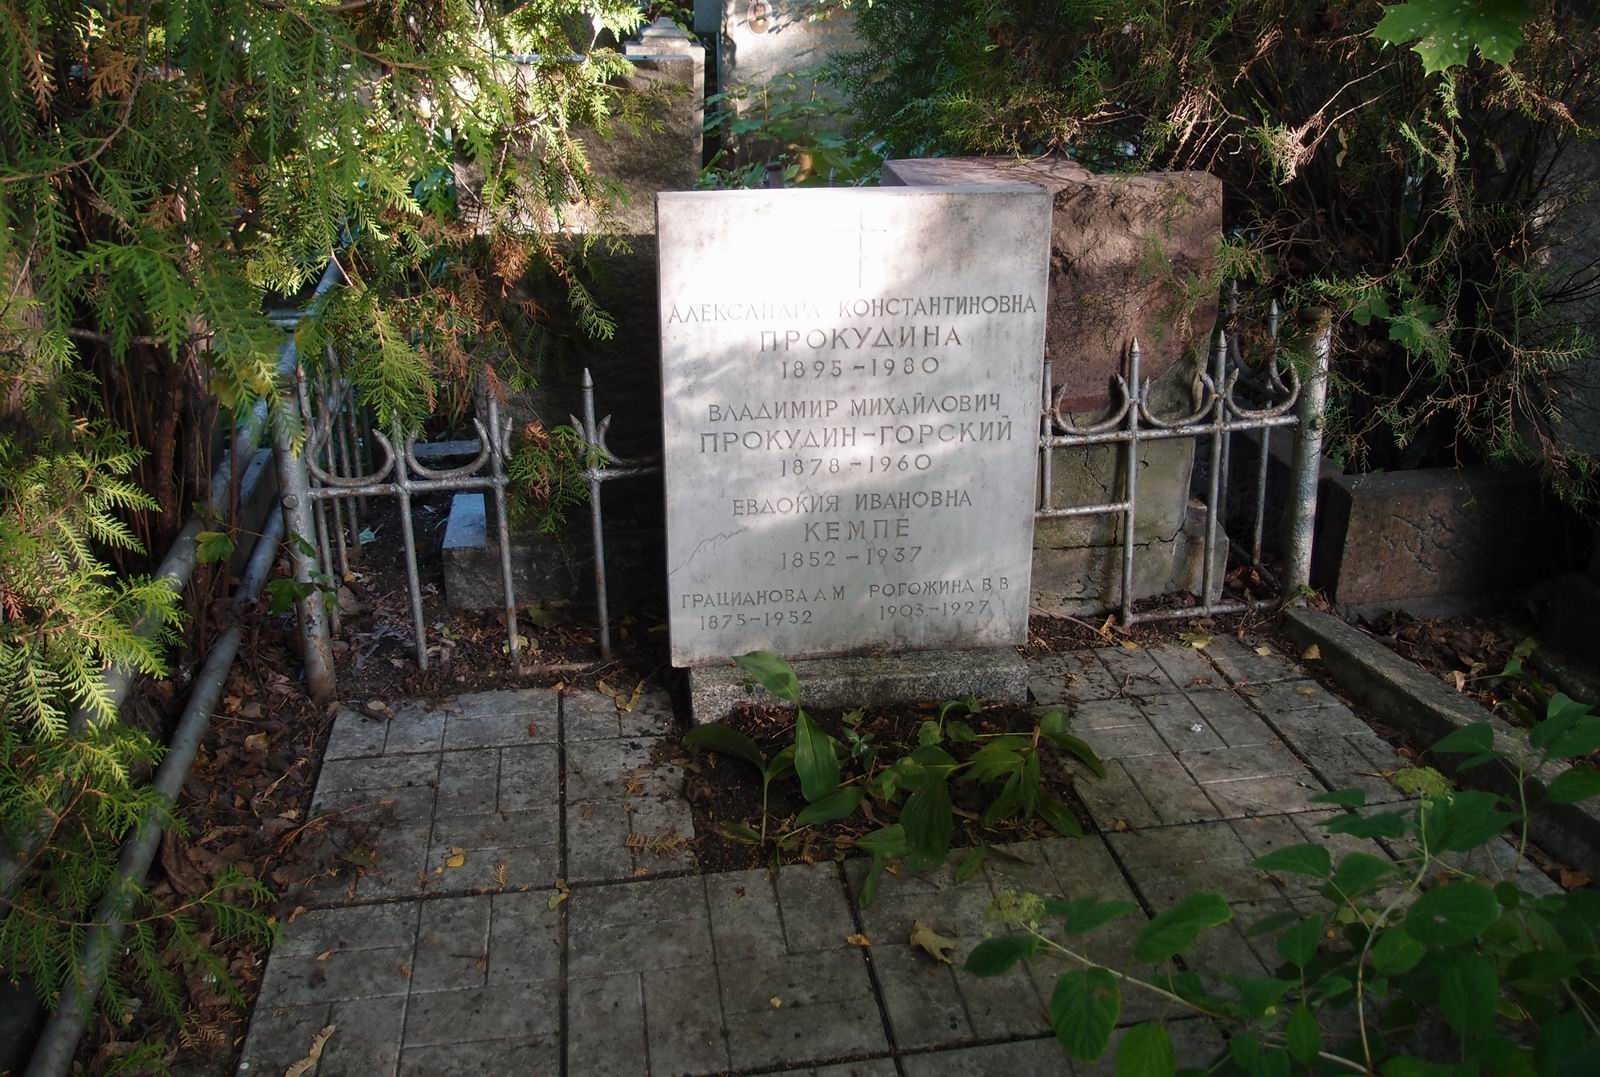 Памятник на могиле Рогожиной В.В. (1903–1927), на Новодевичьем кладбище (3–36–13).